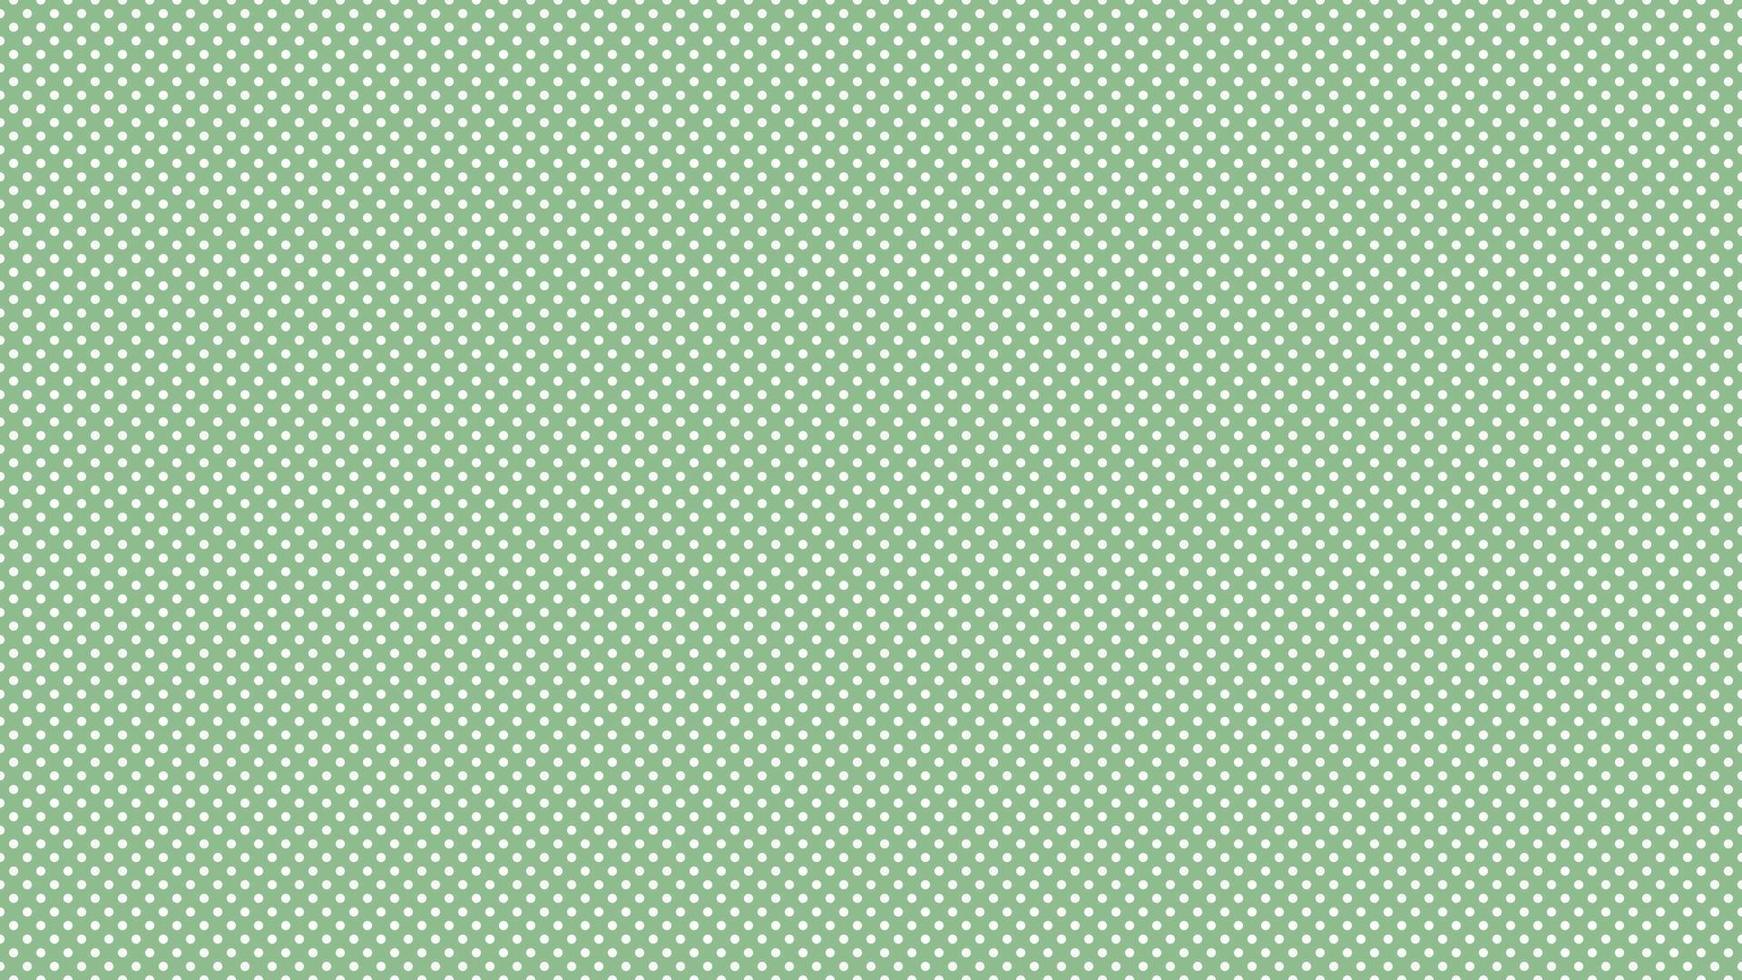 bianca colore polka puntini al di sopra di buio mare verde sfondo vettore